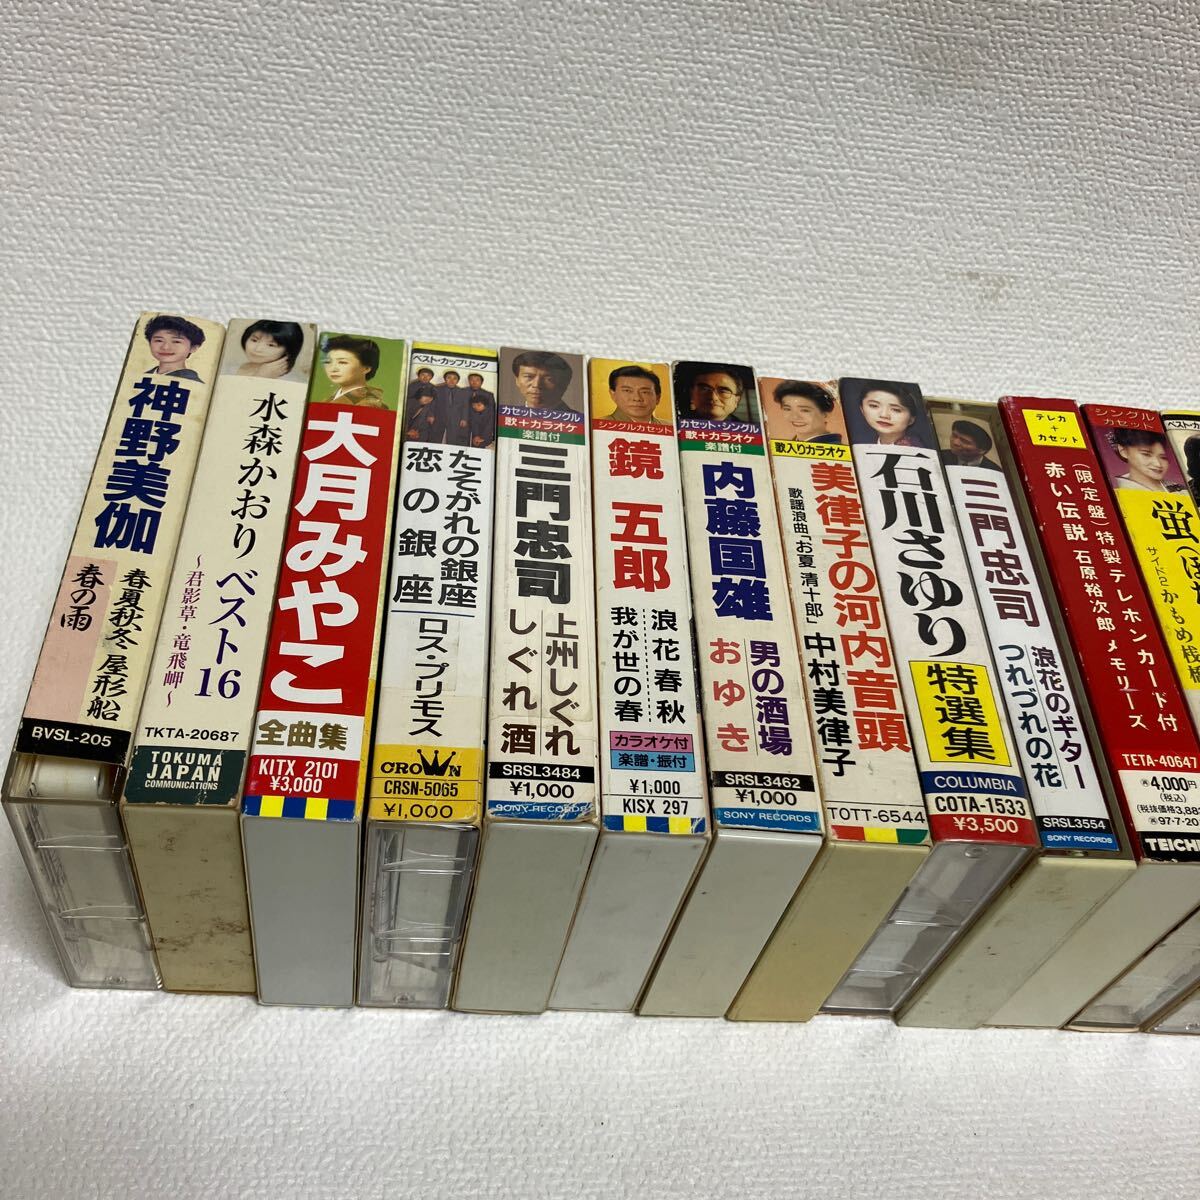 c266 60 cassette tape song bending enka karaoke various together large amount set Ishikawa ... large month ... water front temple Kiyoshi . dirt equipped case scratch equipped Showa era 